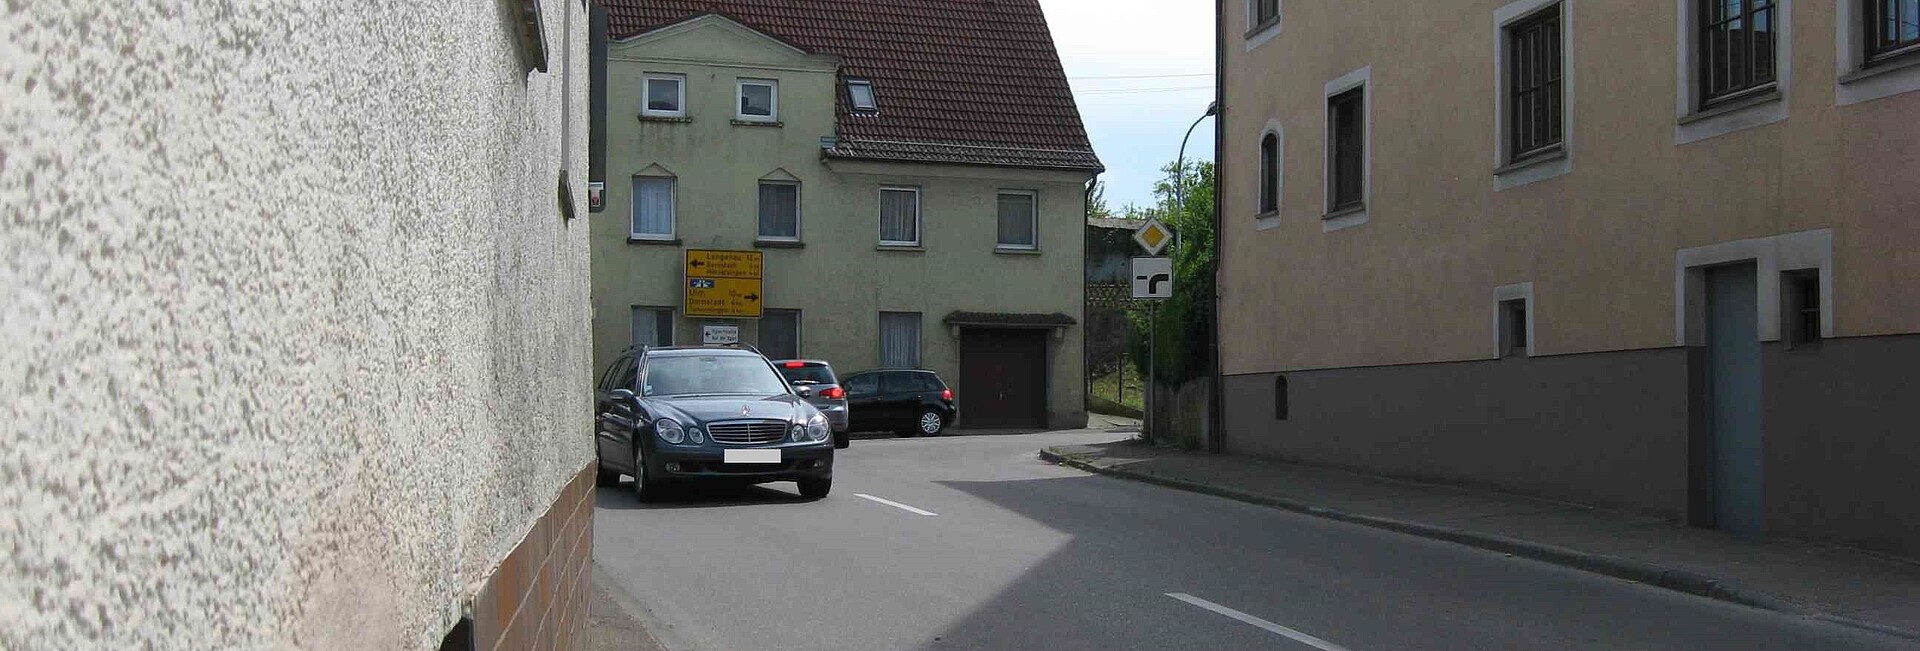 Ortsdurchfahrt 2016 - L 1165 Einmündung Ulmer Straße/Breitinger Straße